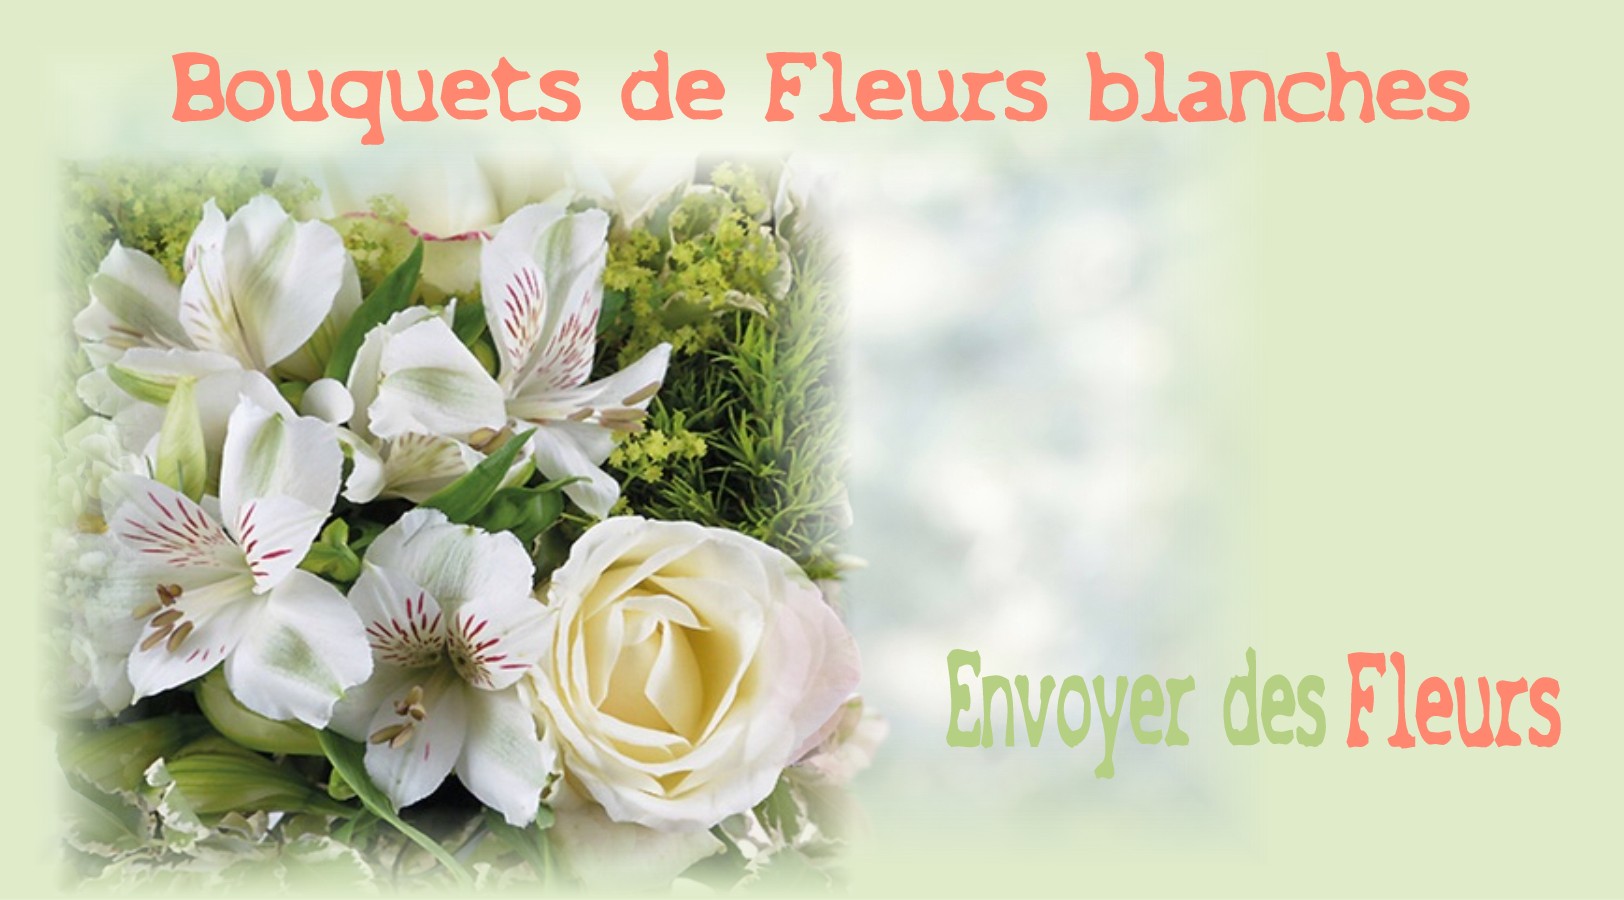 BOUQUETS DE FLEURS BLANCHES -FLEURISTE des ALPES MARITIMES - ENVOYER DES FLEURS